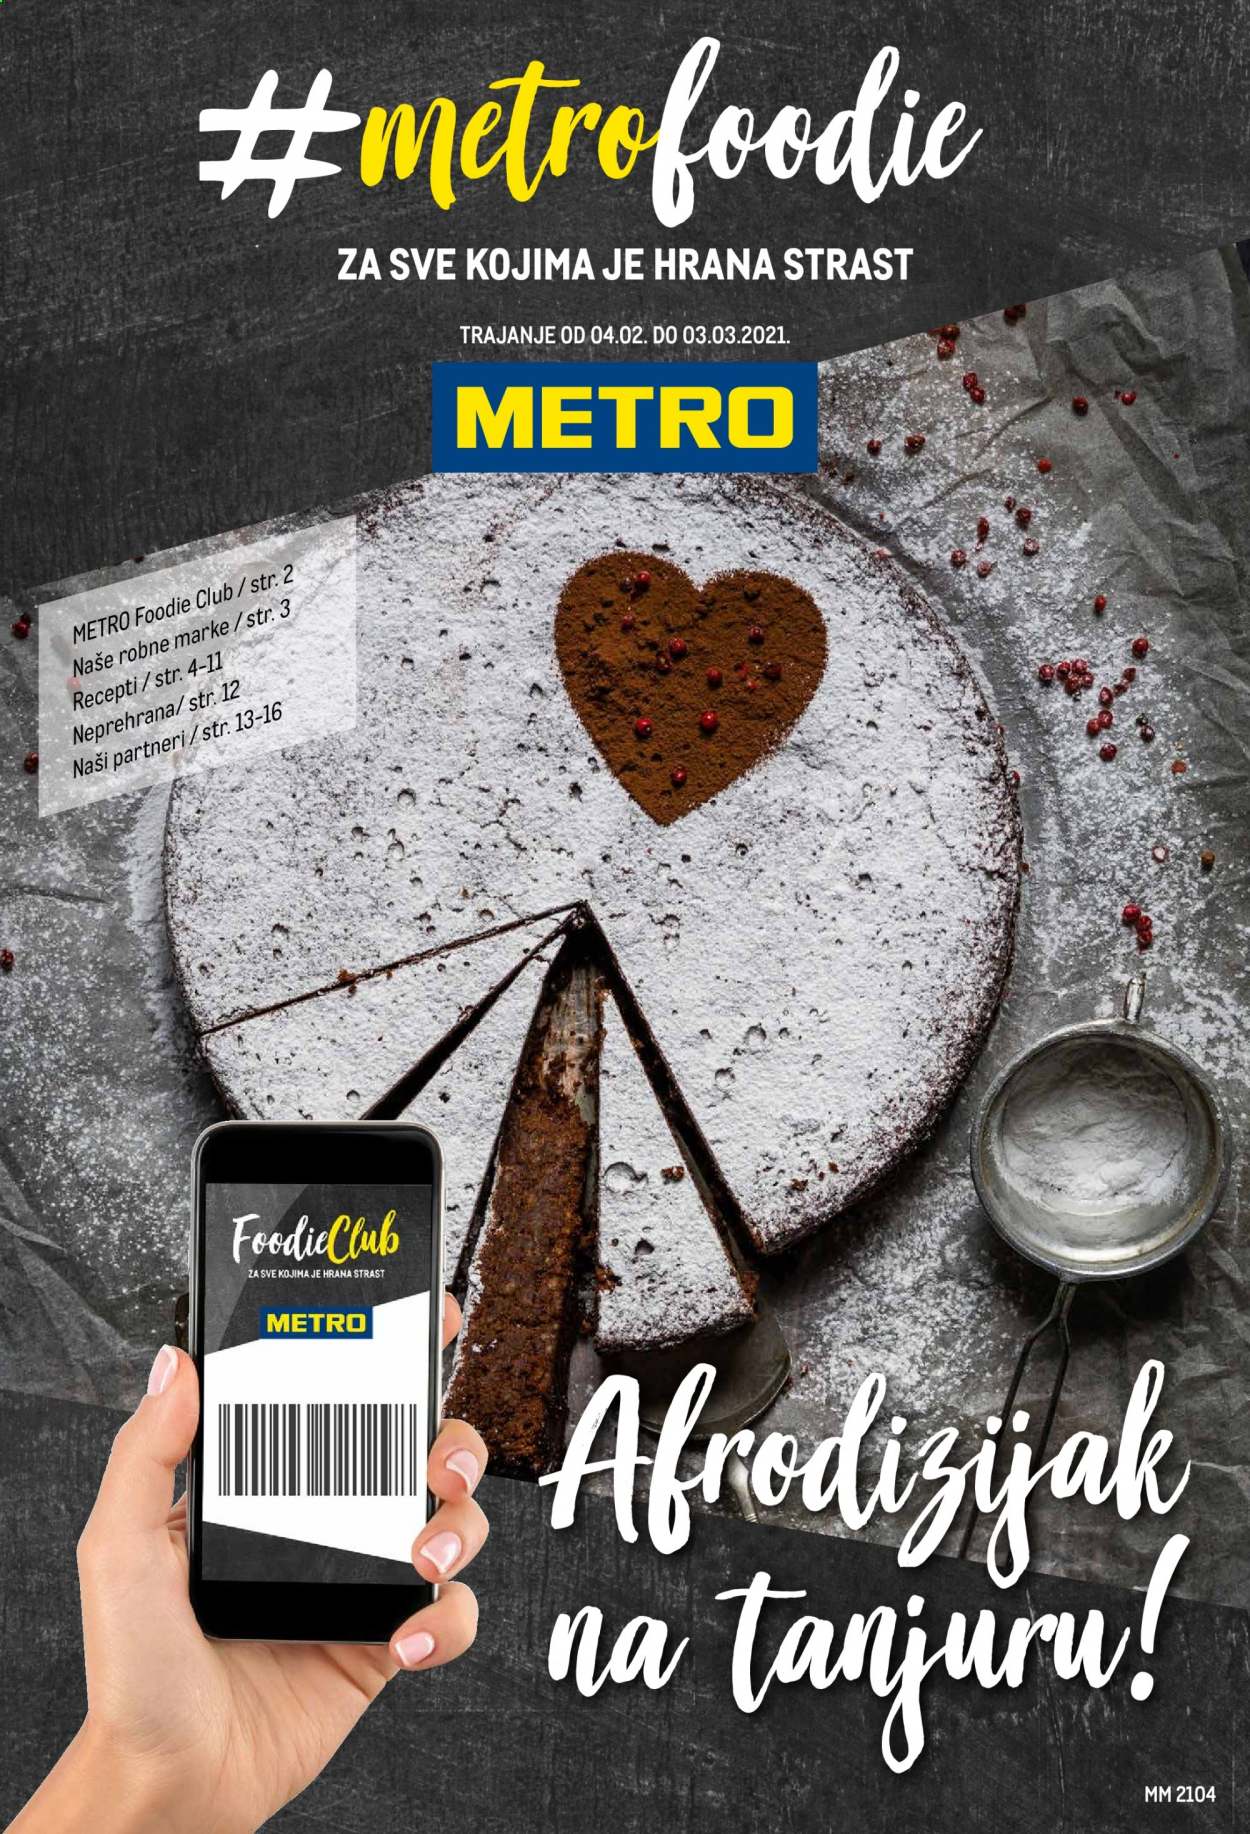 thumbnail - Metro katalog - 04.02.2021. - 03.03.2021.